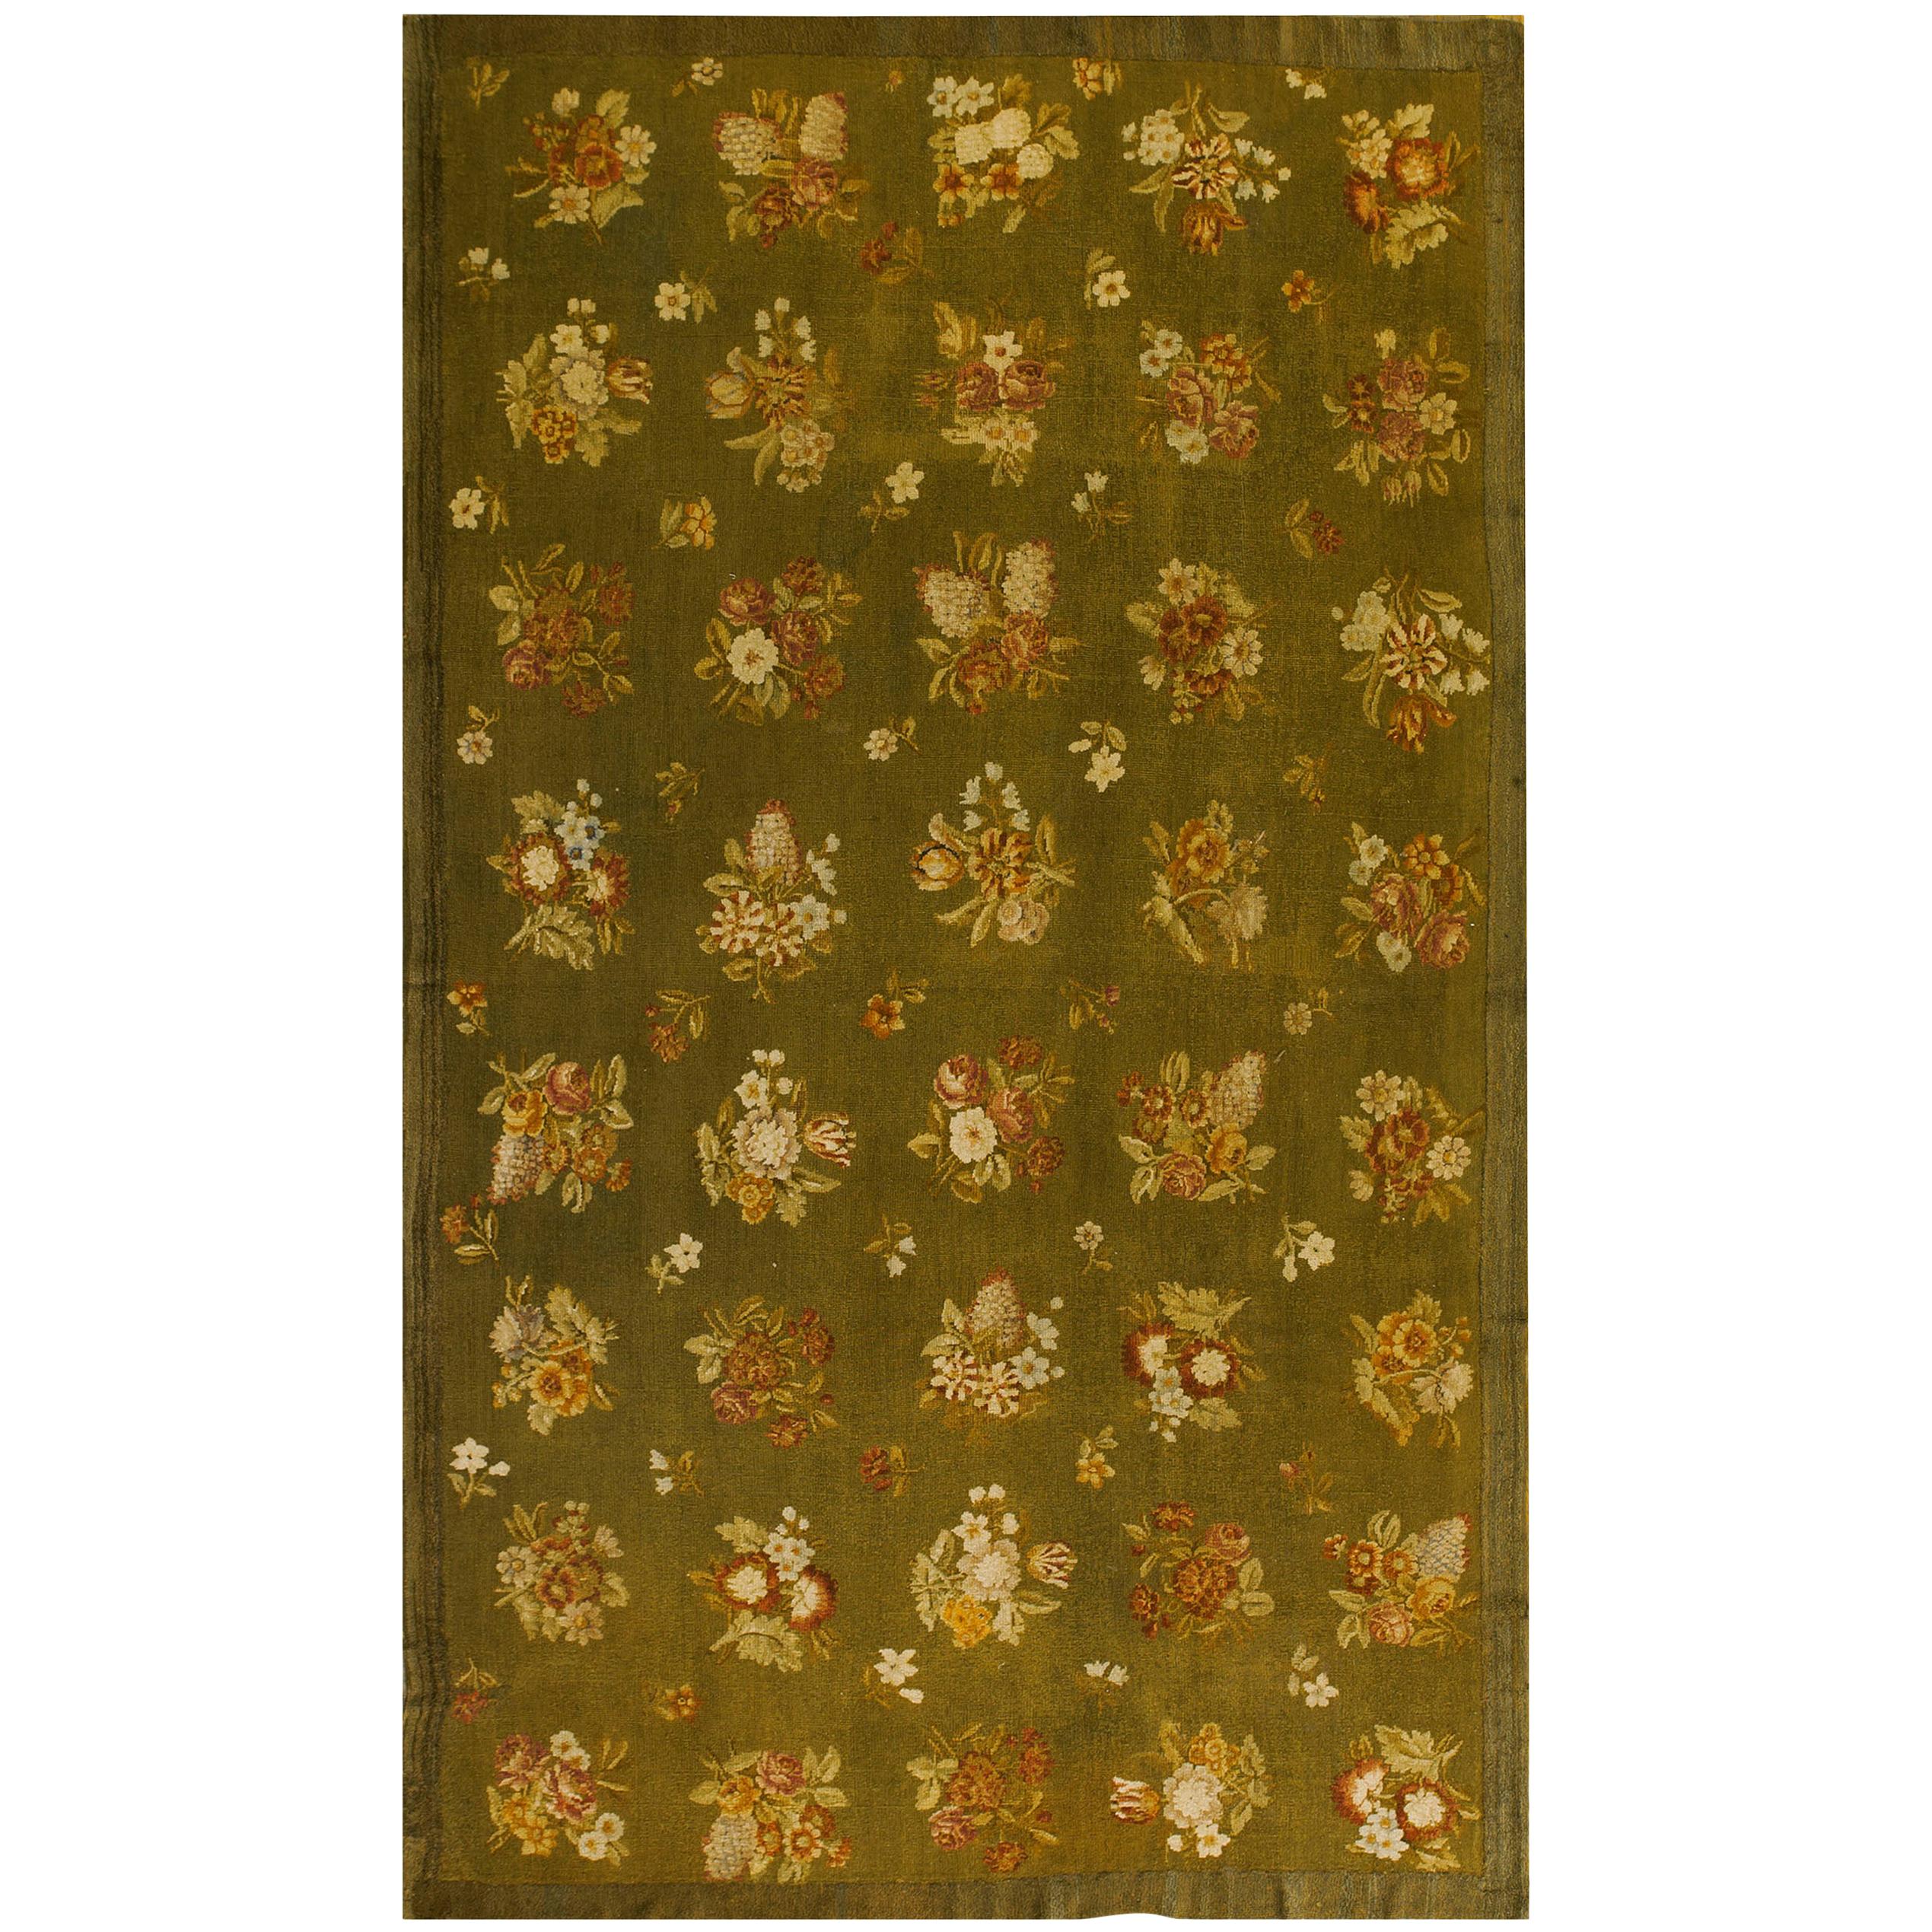 Französischer Savonnerie-Teppich aus dem frühen 19. Jahrhundert ( 8'x13'6" - 243x412")